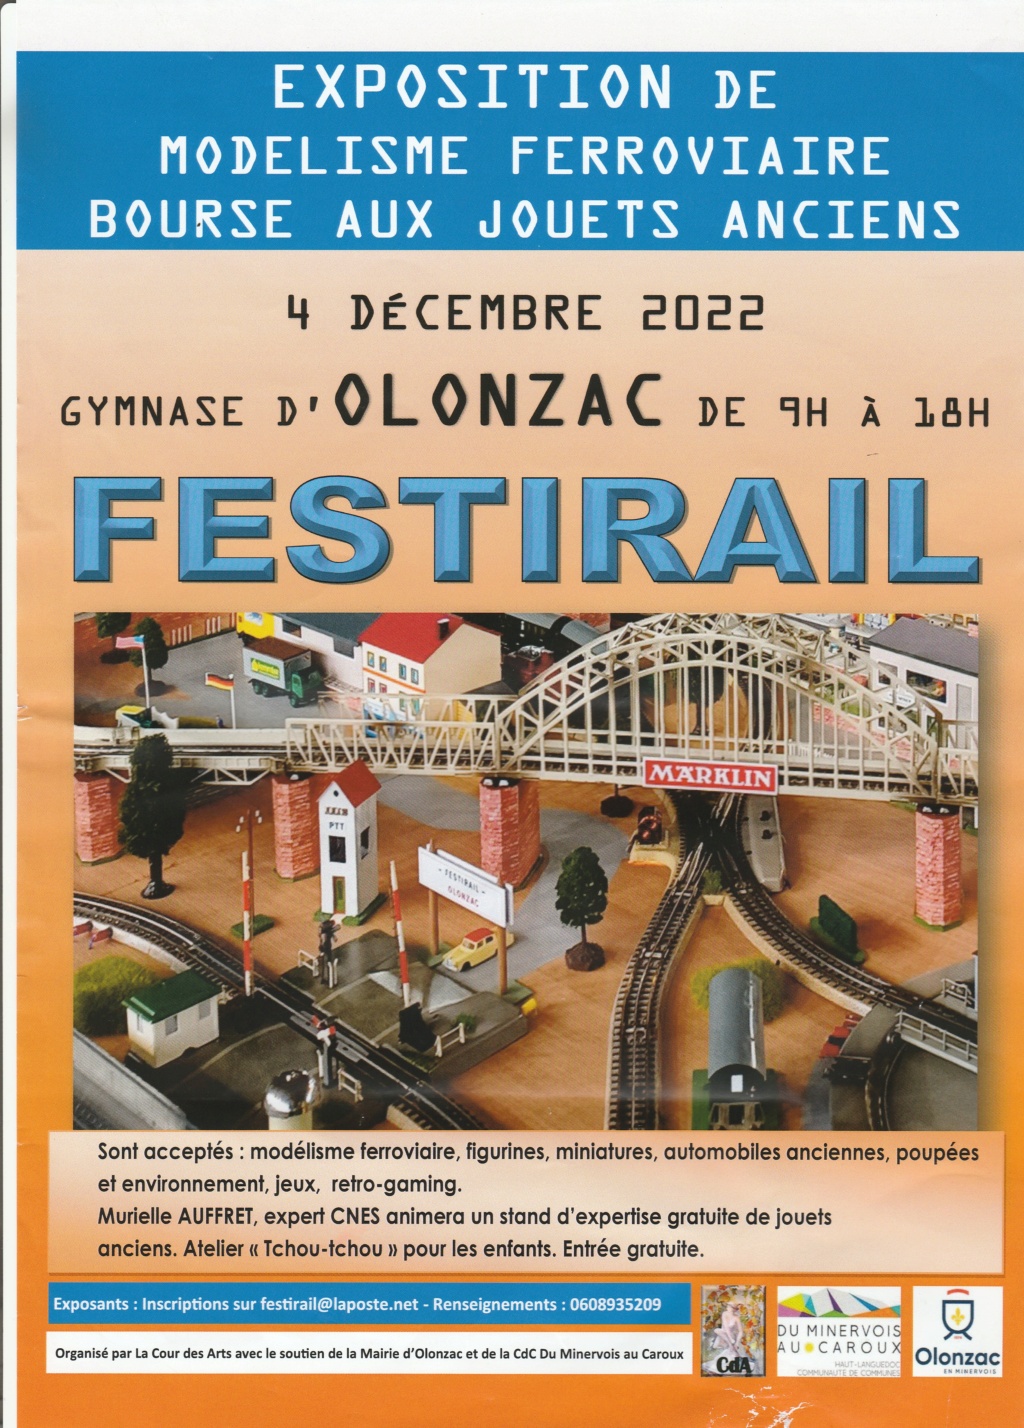 Bourse de jouets anciens et exposition ferroviaire d'OLONZAC le 04 DECEMBRE 2022 Festir10